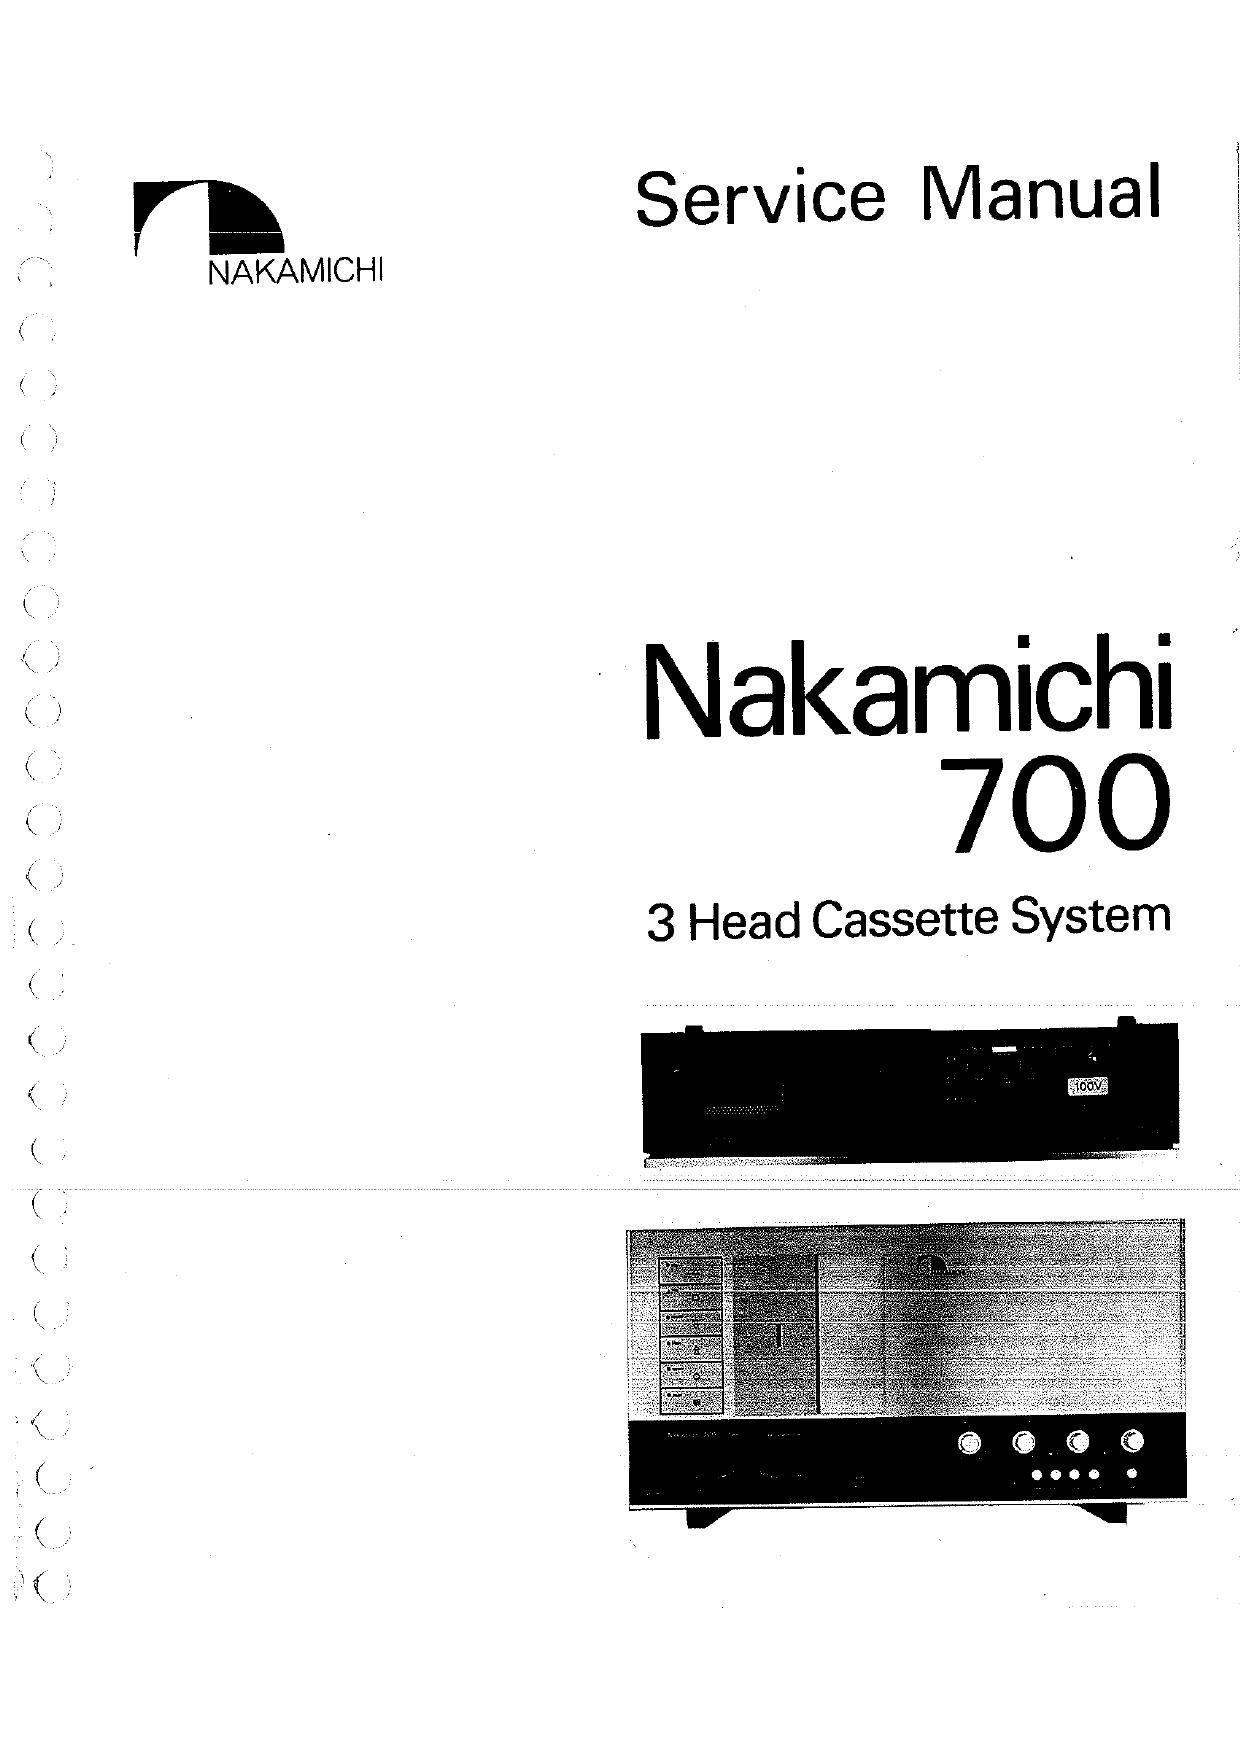 Nakamichi 700 Service Manual